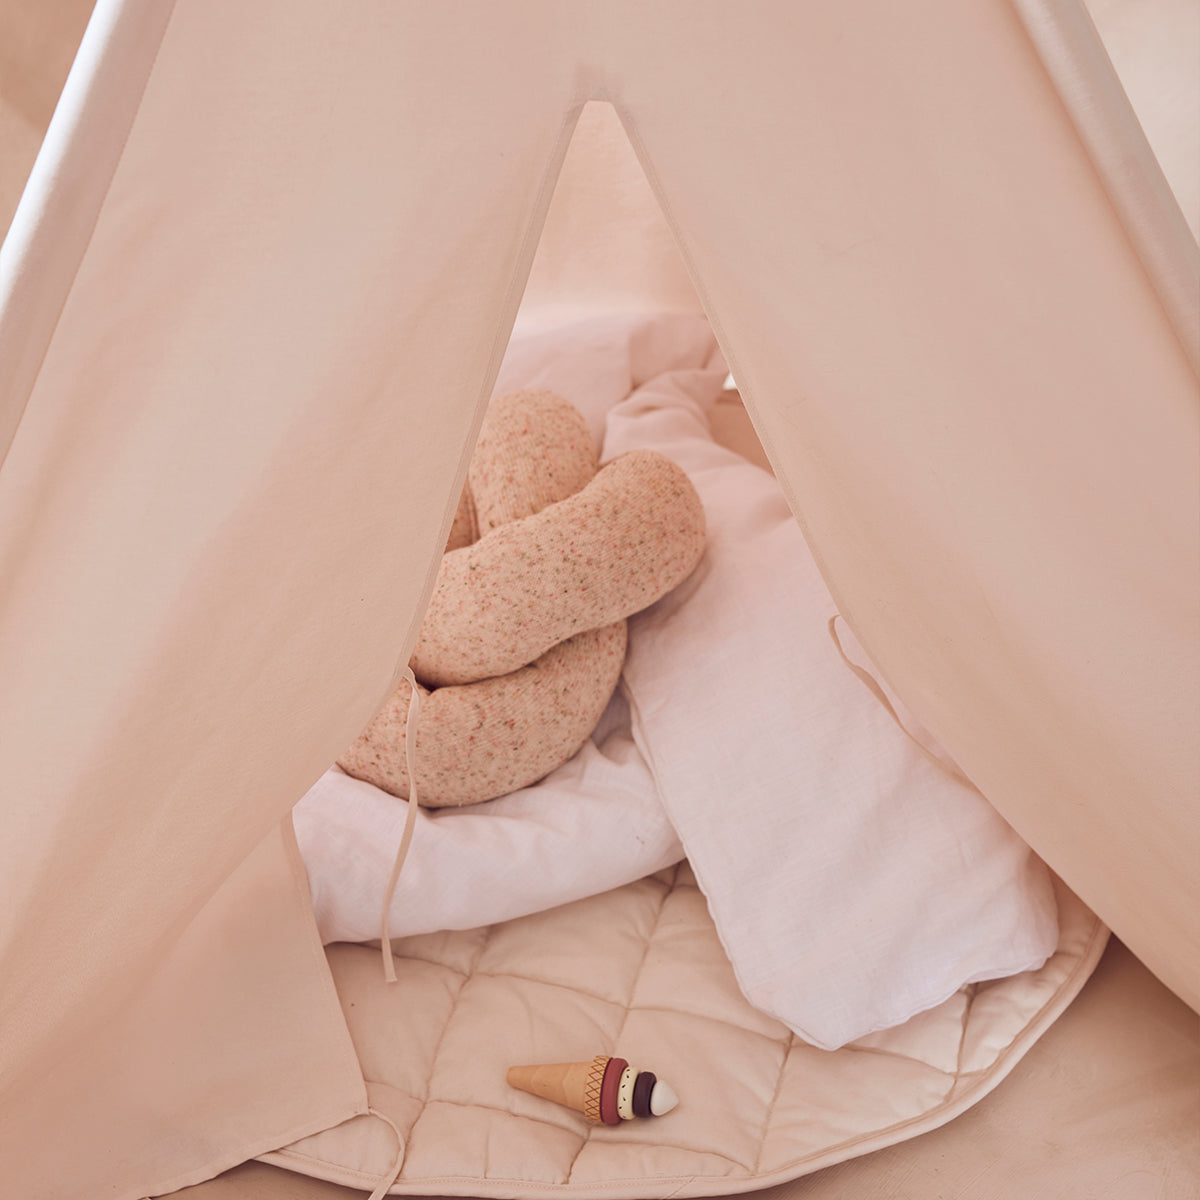 De Kid's Concept tipi tent gebroken wit is het perfecte plekje voor jouw kindje om lekker in te spelen of in te relaxen. Gebruik de tipi als huisje, speeltent of neem dekens, kussens en een boek mee en ga lekker lezen. VanZus.